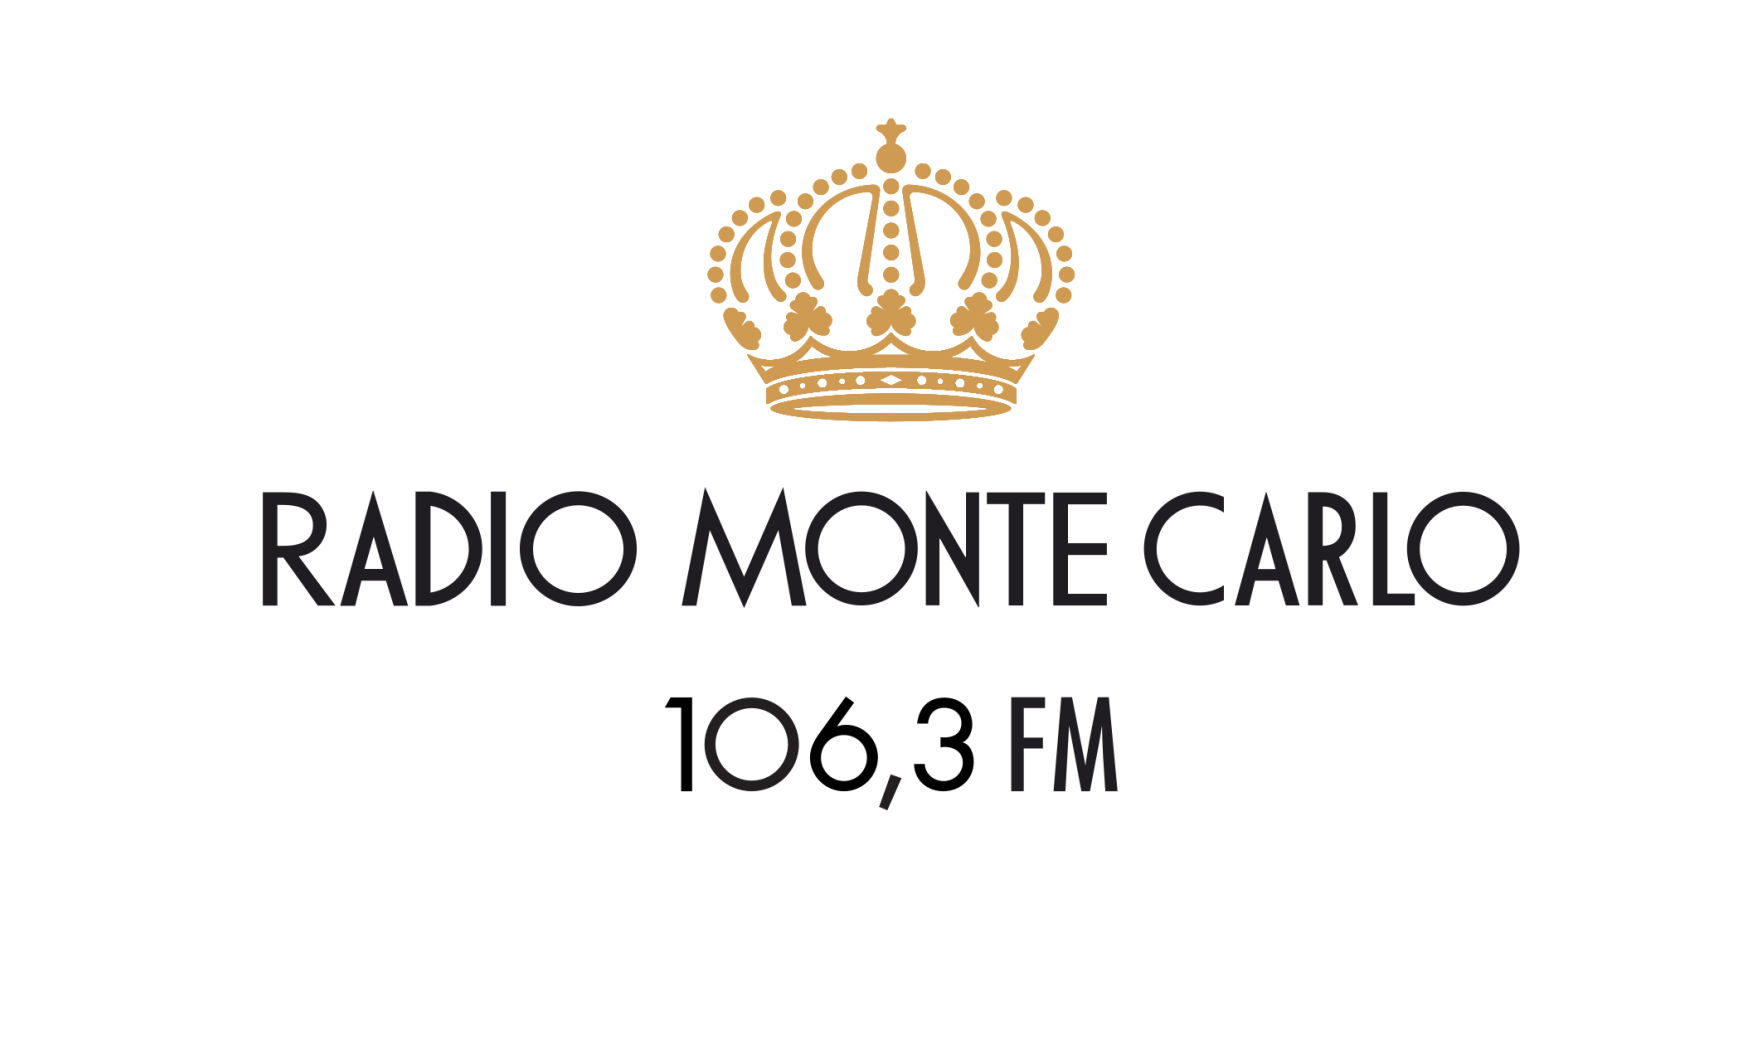 Монте Карло (радиостанция) радиостанции. Монте Карло логотип. Радио Monte Carlo логотип. Значки радио Монте Карло.